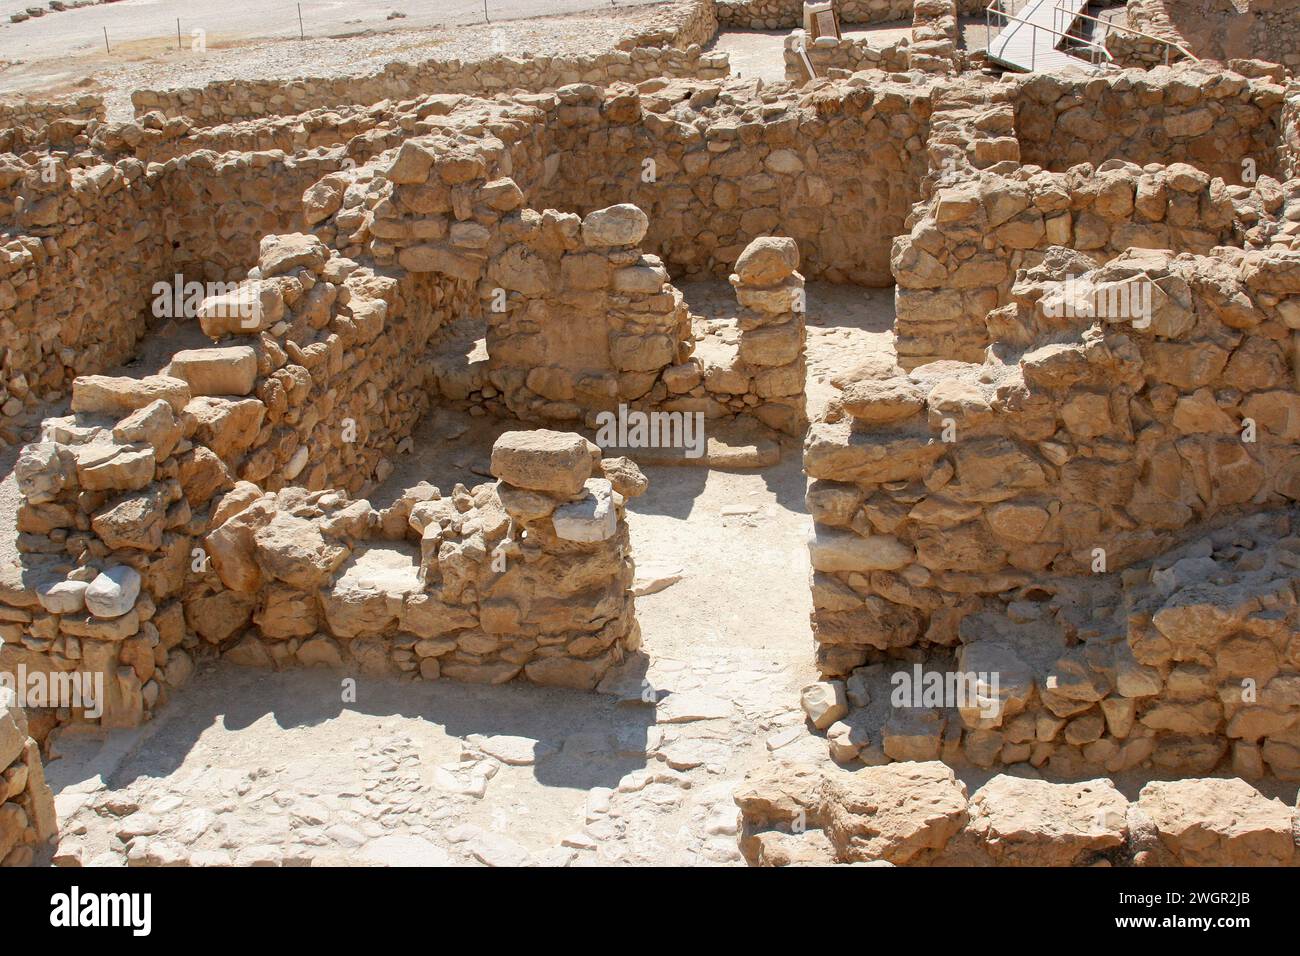 Parc national de Qumran, ruines du village adjacent aux grottes de manuscrits de la mer morte, désert de Judée, Israël Banque D'Images